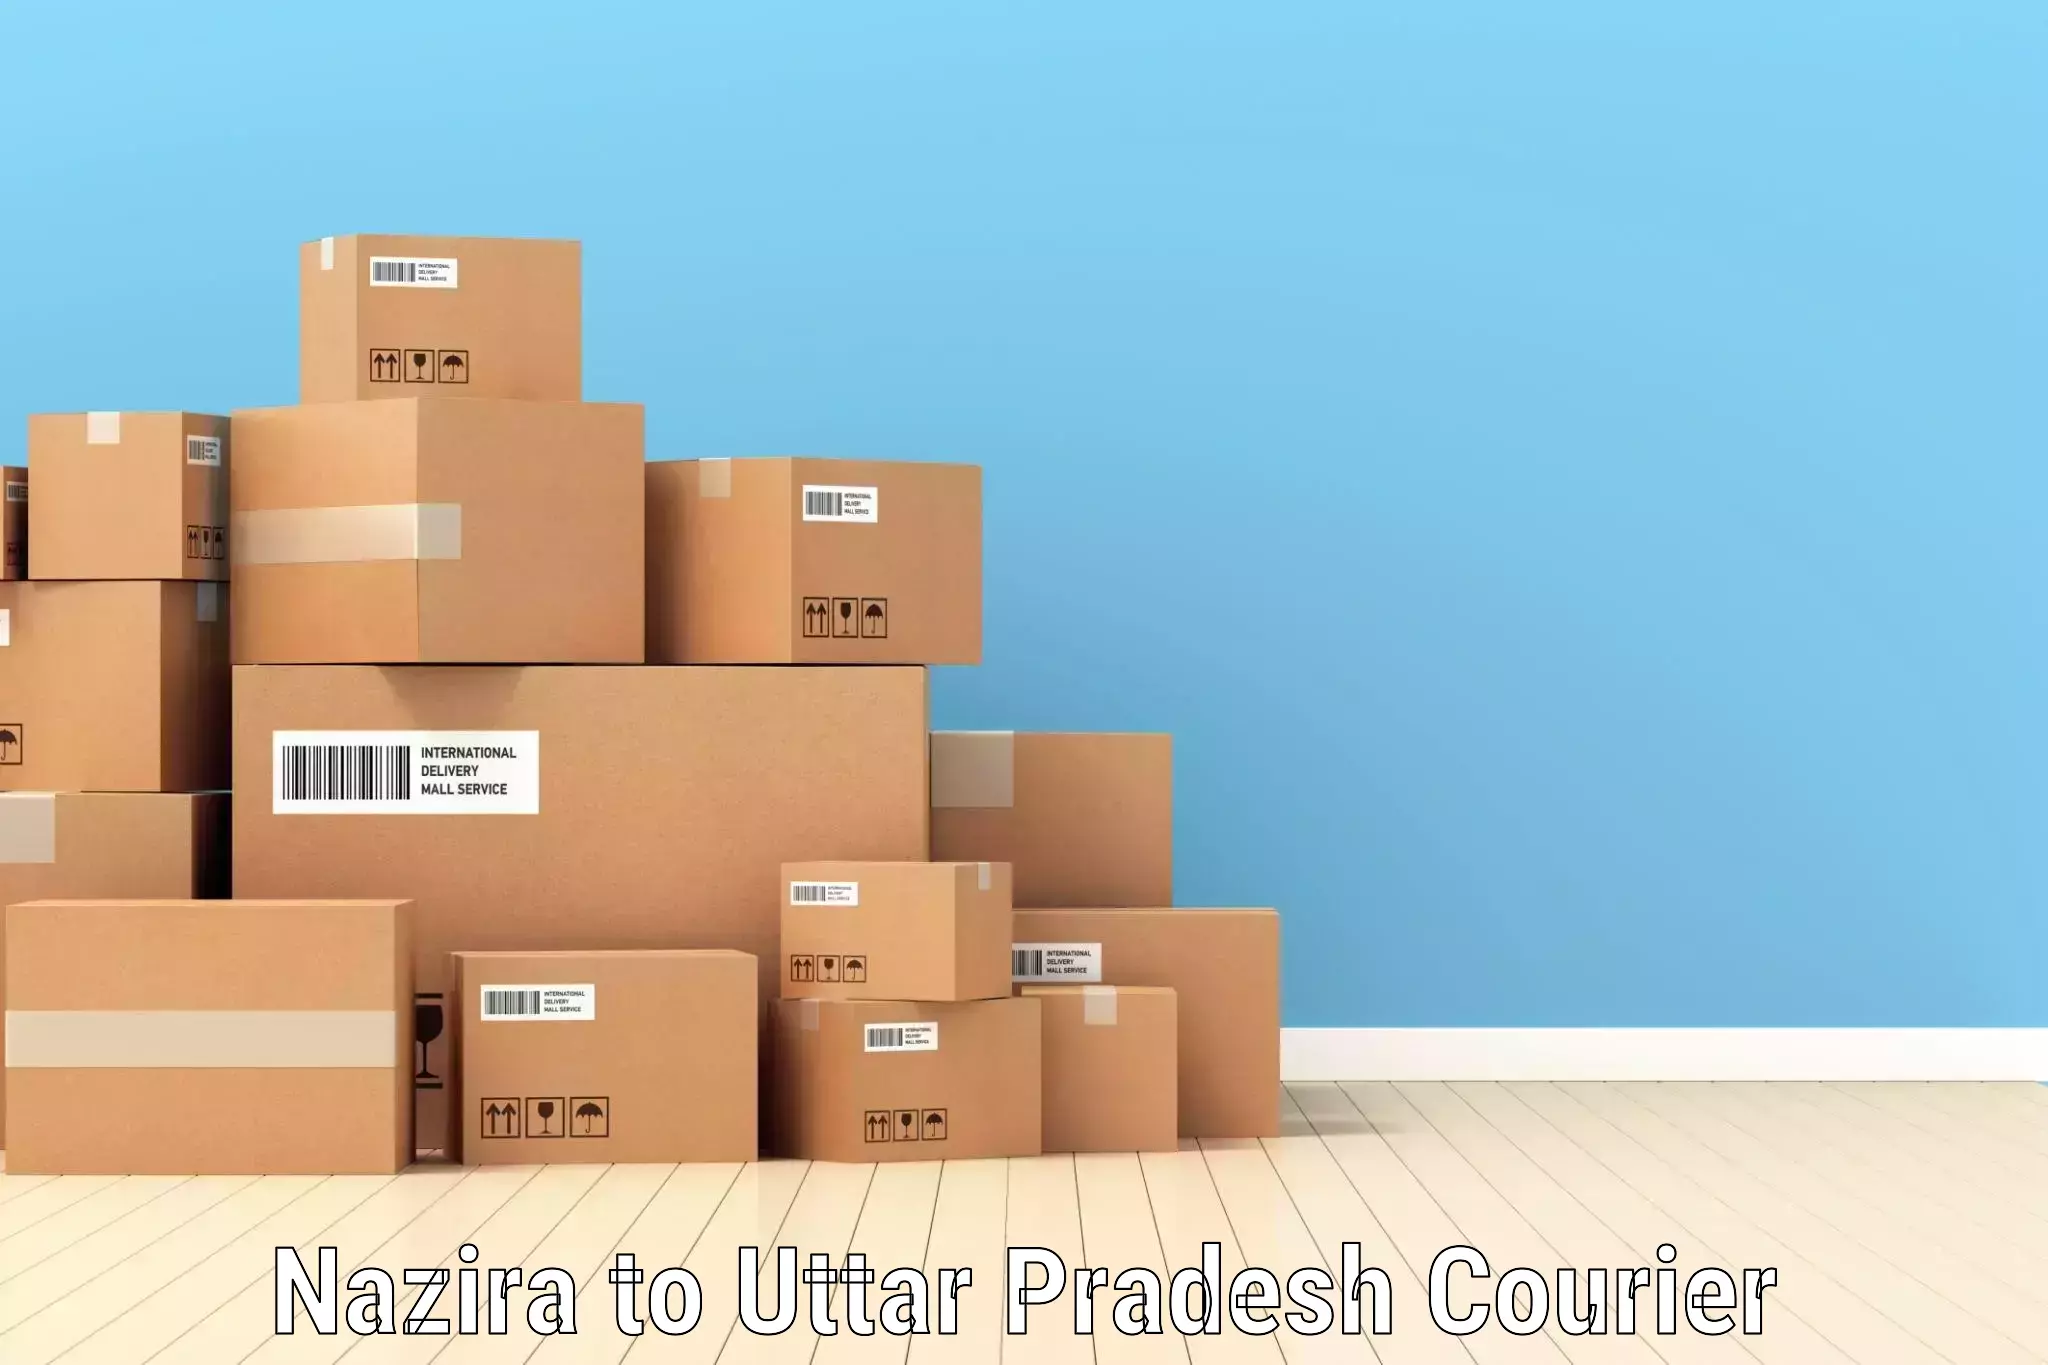 Package tracking Nazira to Uttar Pradesh